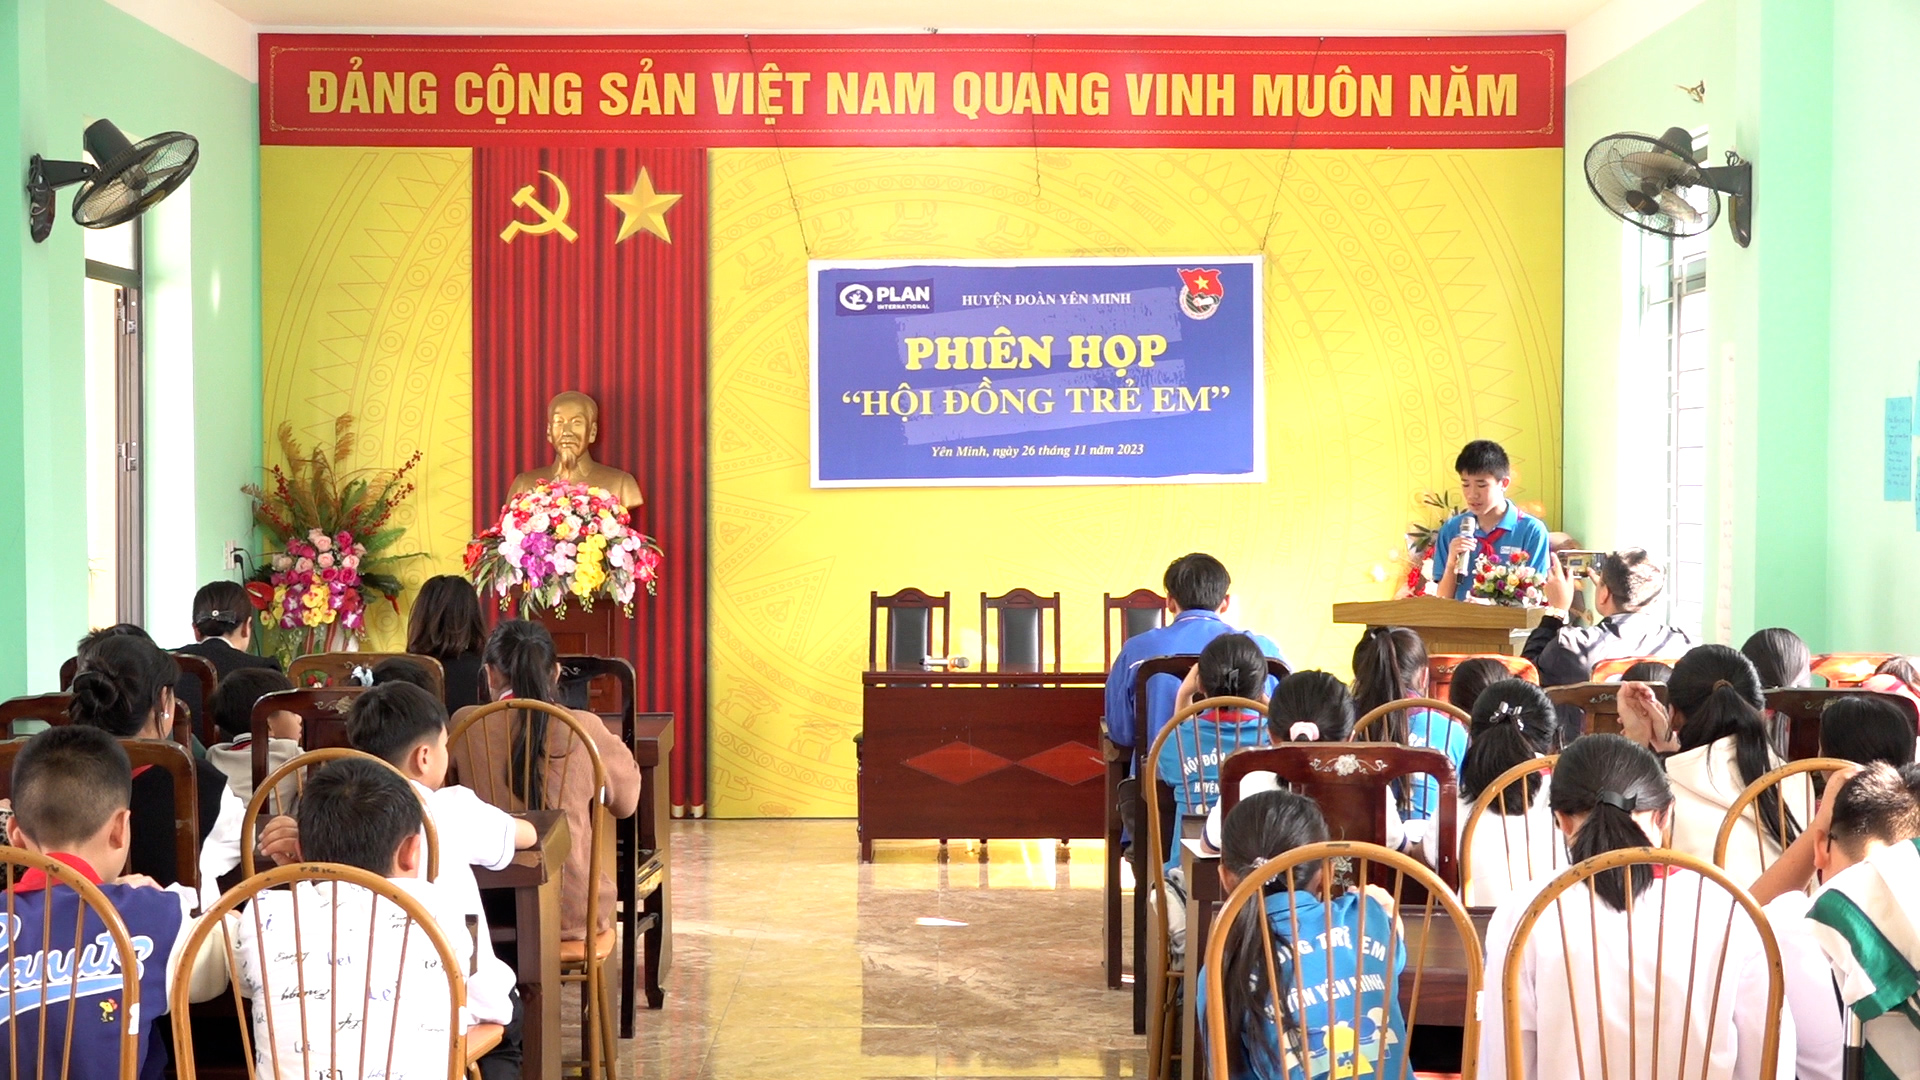 Hội đồng trẻ em huyện Yên Minh tổ chức phiên họp năm 2023